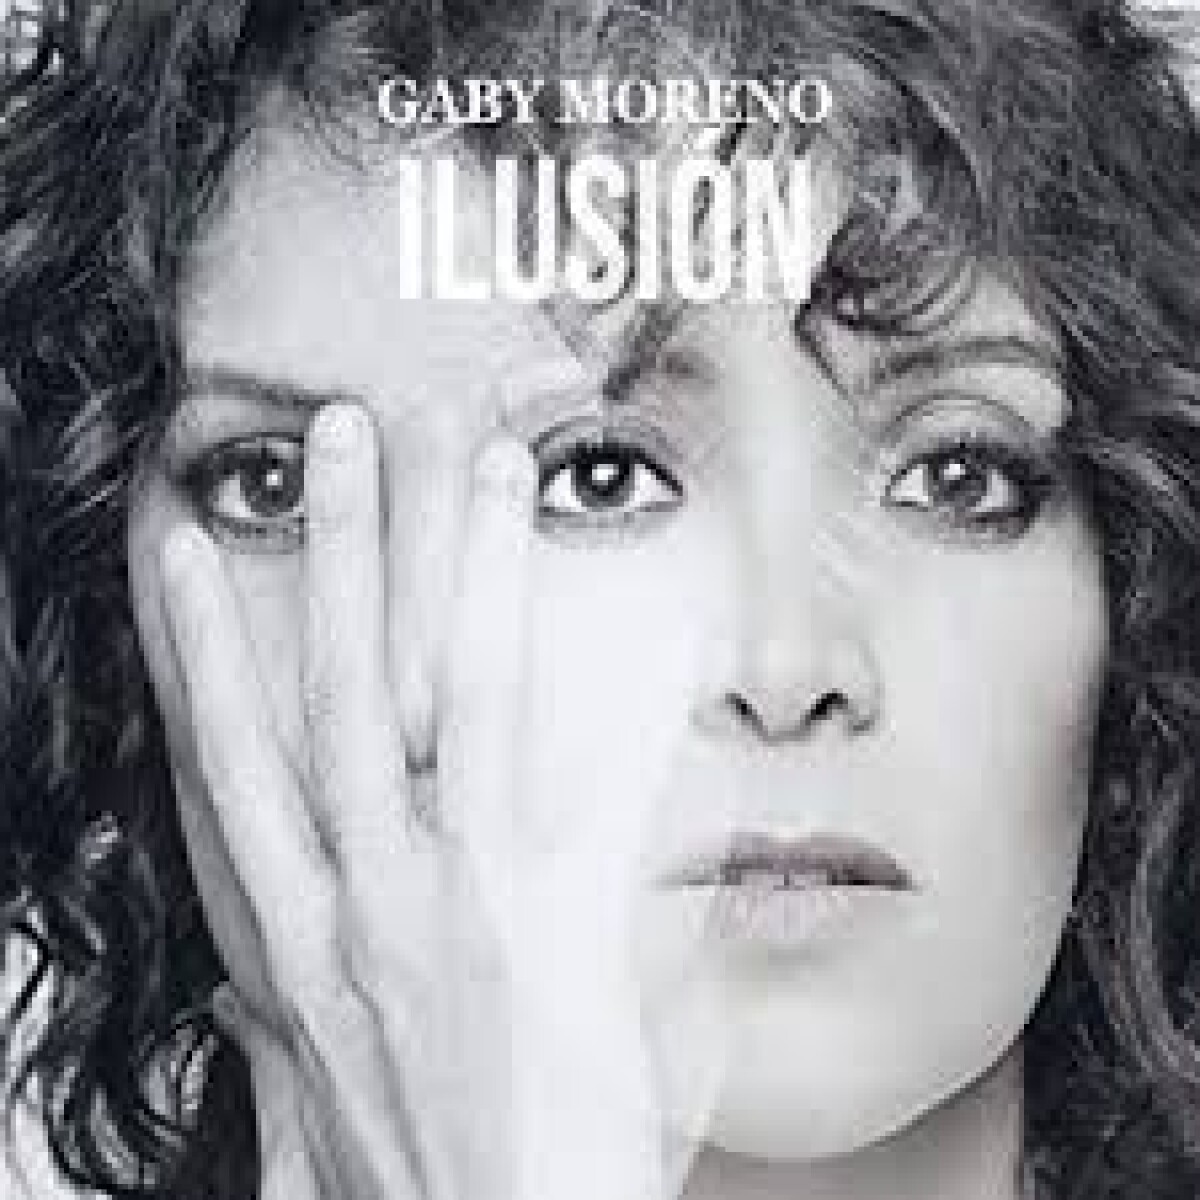 (u) Moreno Gaby-ilusion - Vinilo 